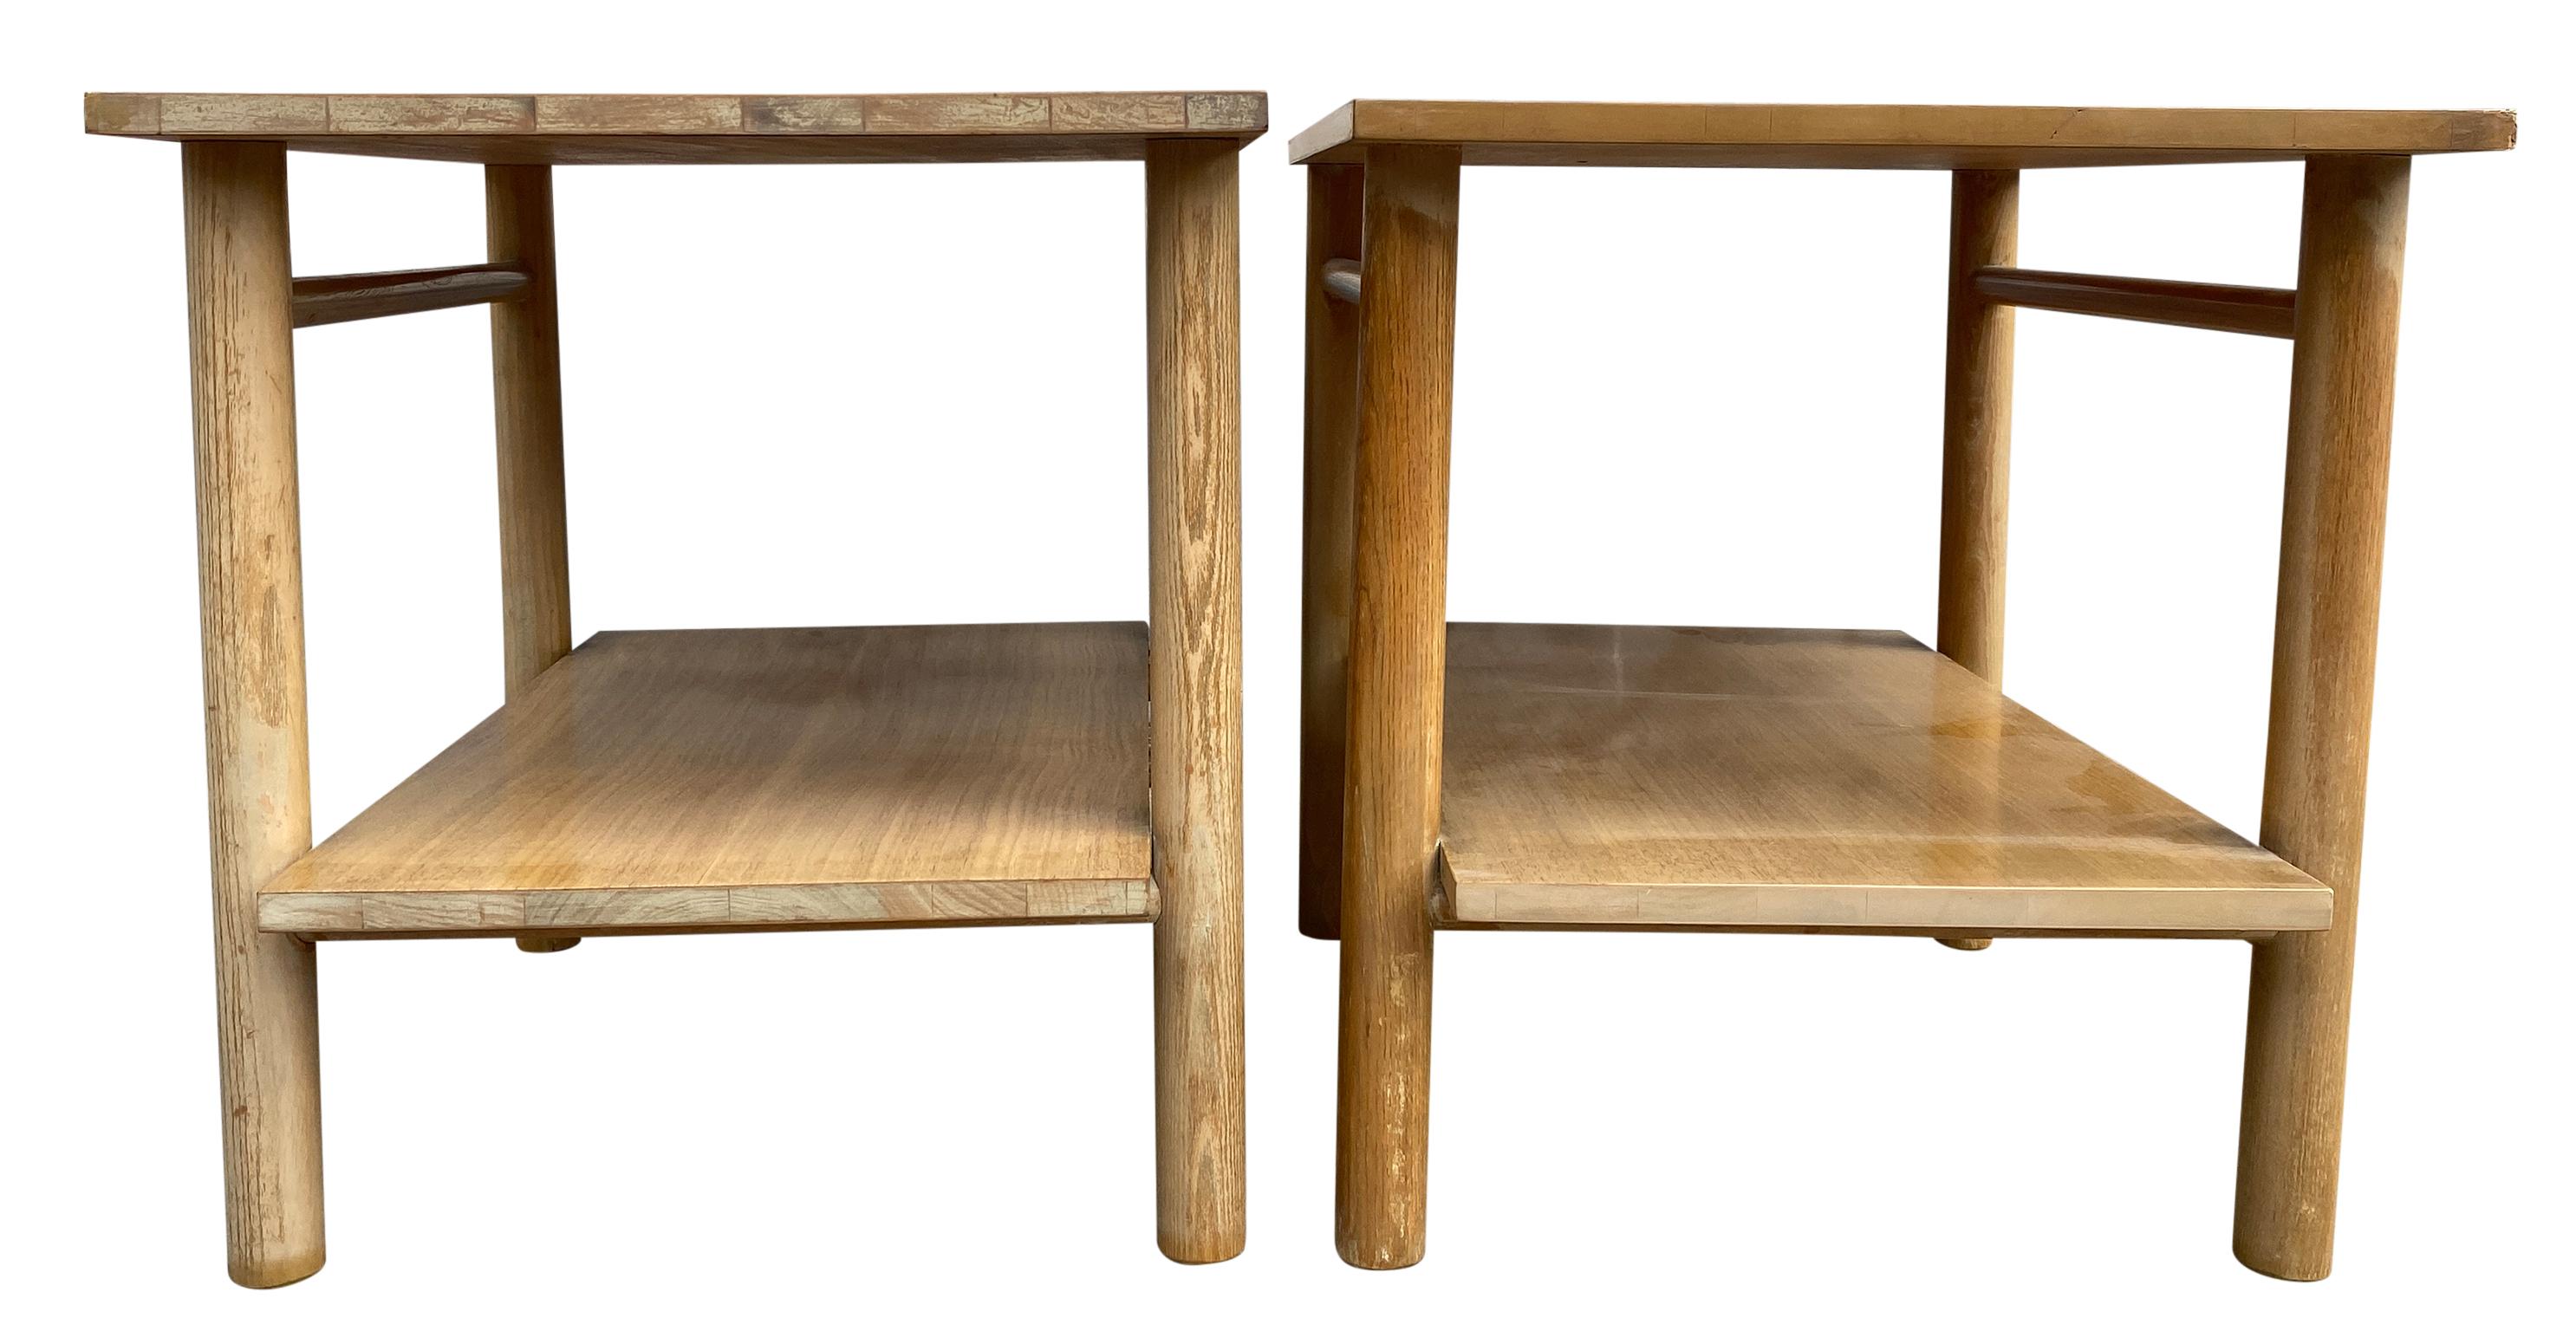 (2) midcentury modern simple white oak end side bedside tables nightstands - Très propre. Bois massif. Fabriqué aux États-Unis. Le haut et le bas de l'étagère sont constitués de simples pieds ronds en goujon.